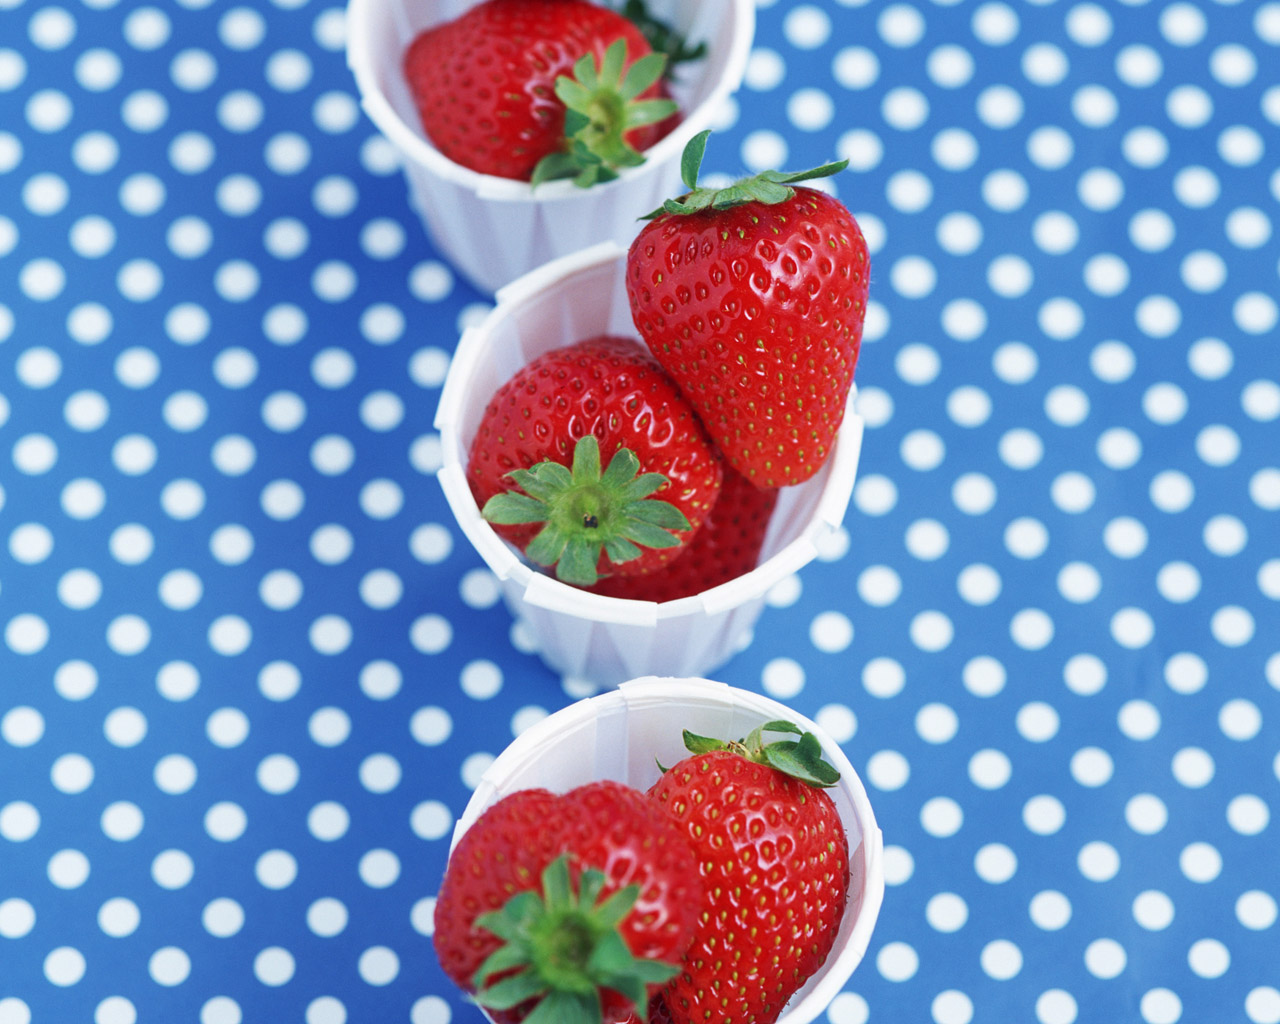 壁纸 美味新鲜的草莓 3840x2160 UHD 4K 高清壁纸, 图片, 照片